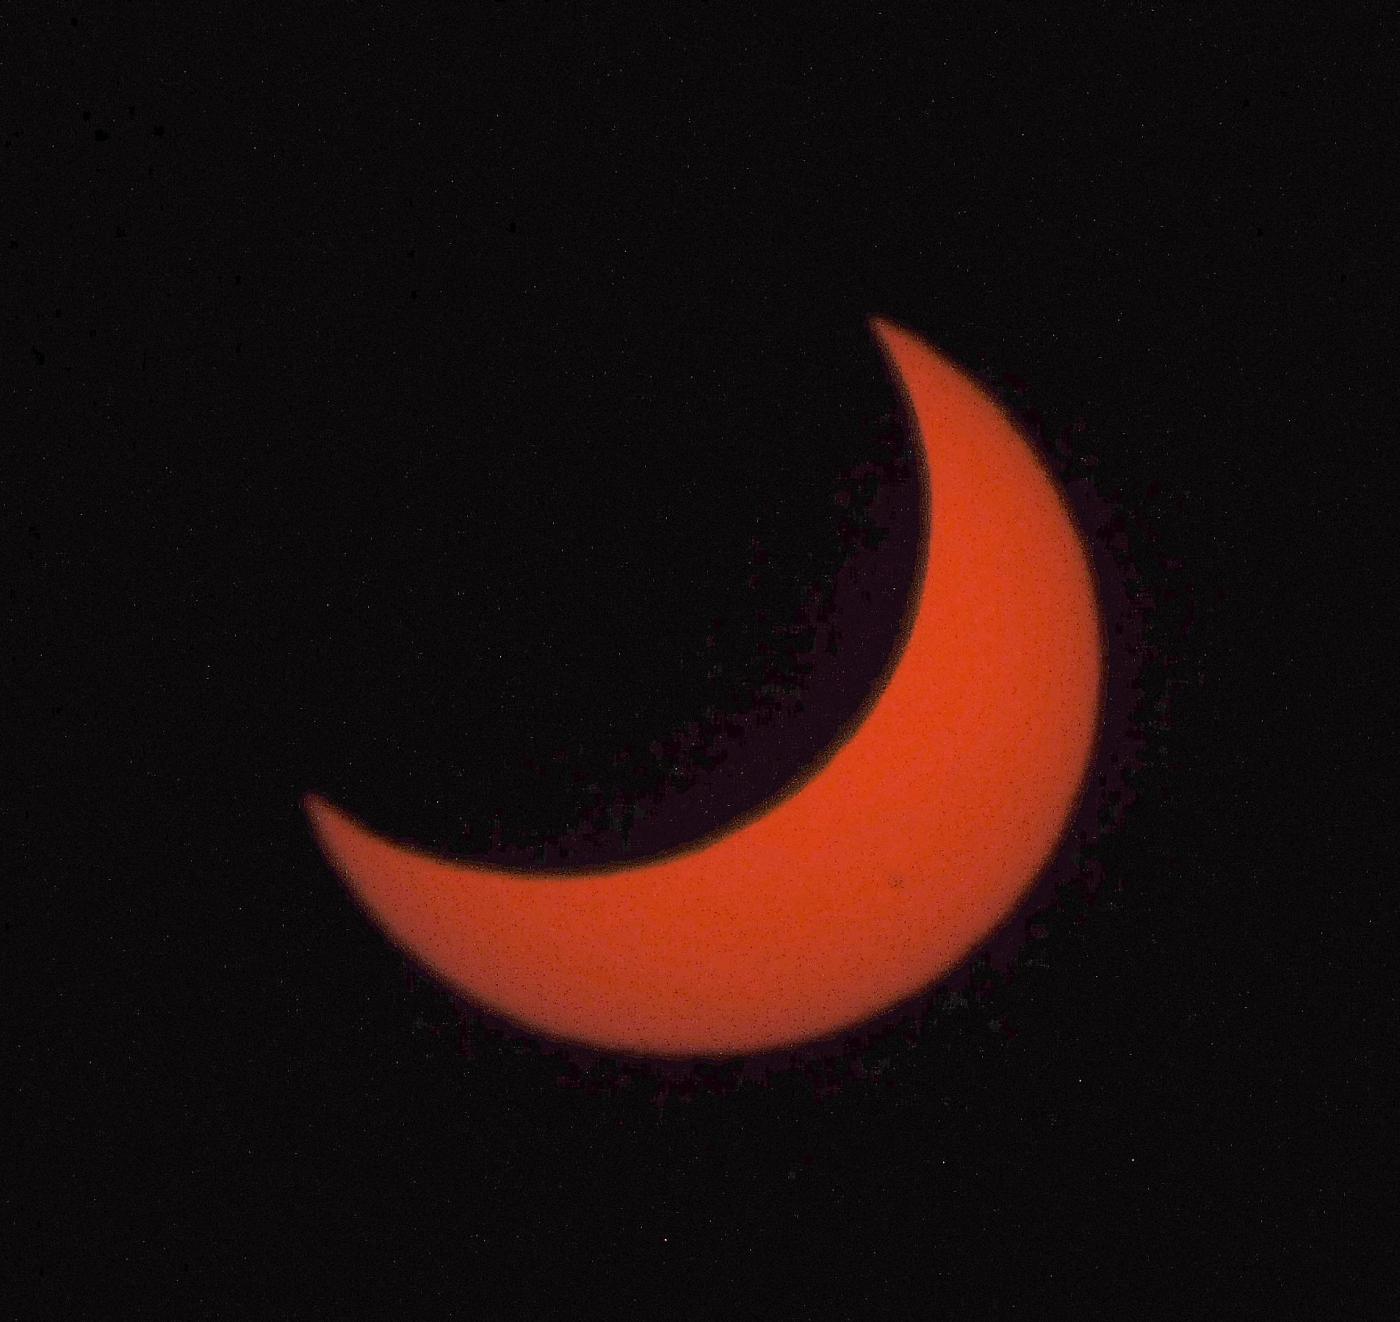 Spettacolare Eclissi sole 02